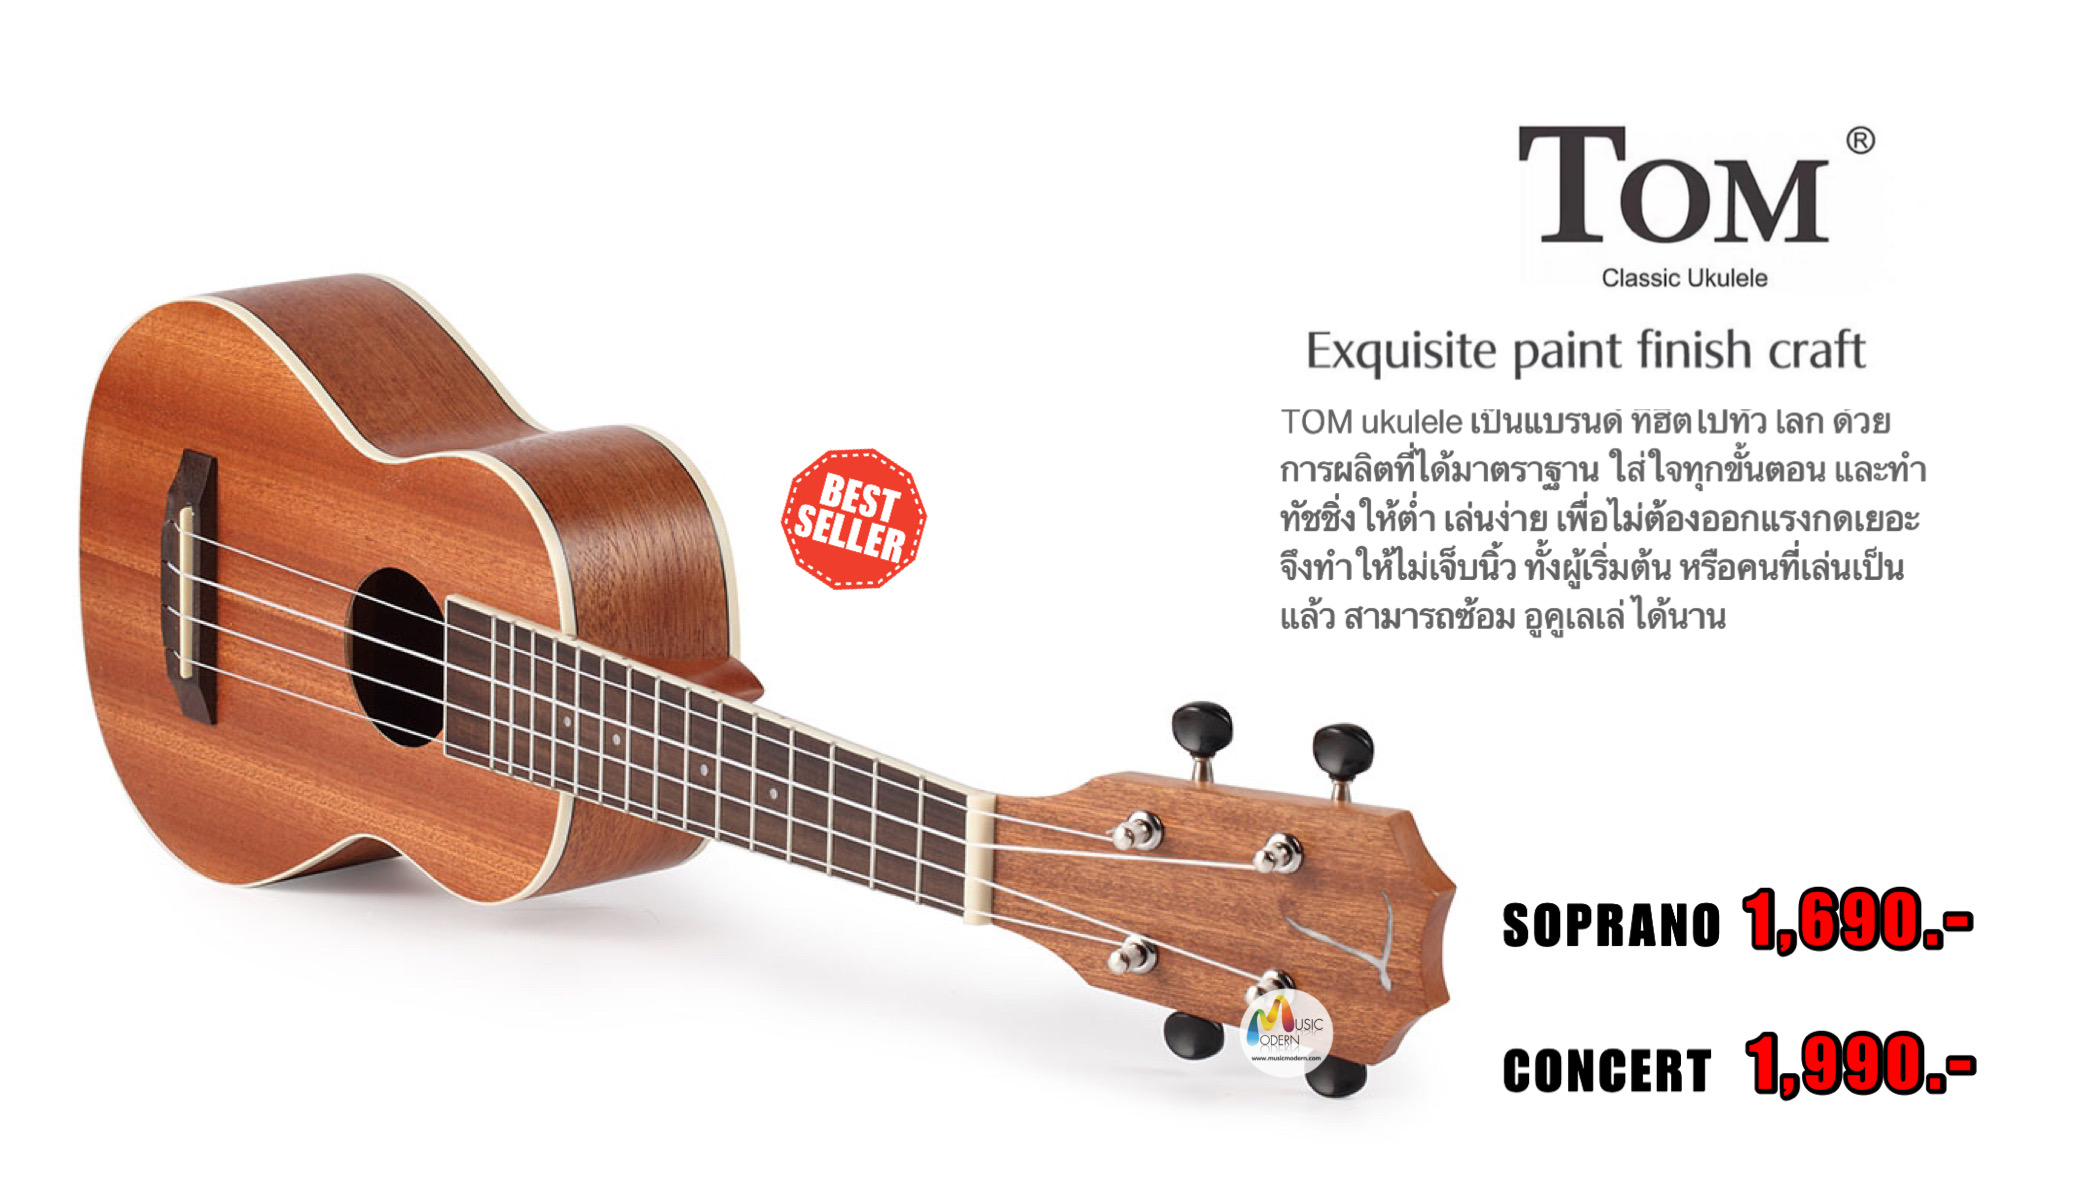 Tom ukulele, อูคูเลเล่ ยี่ห้อ ทอม